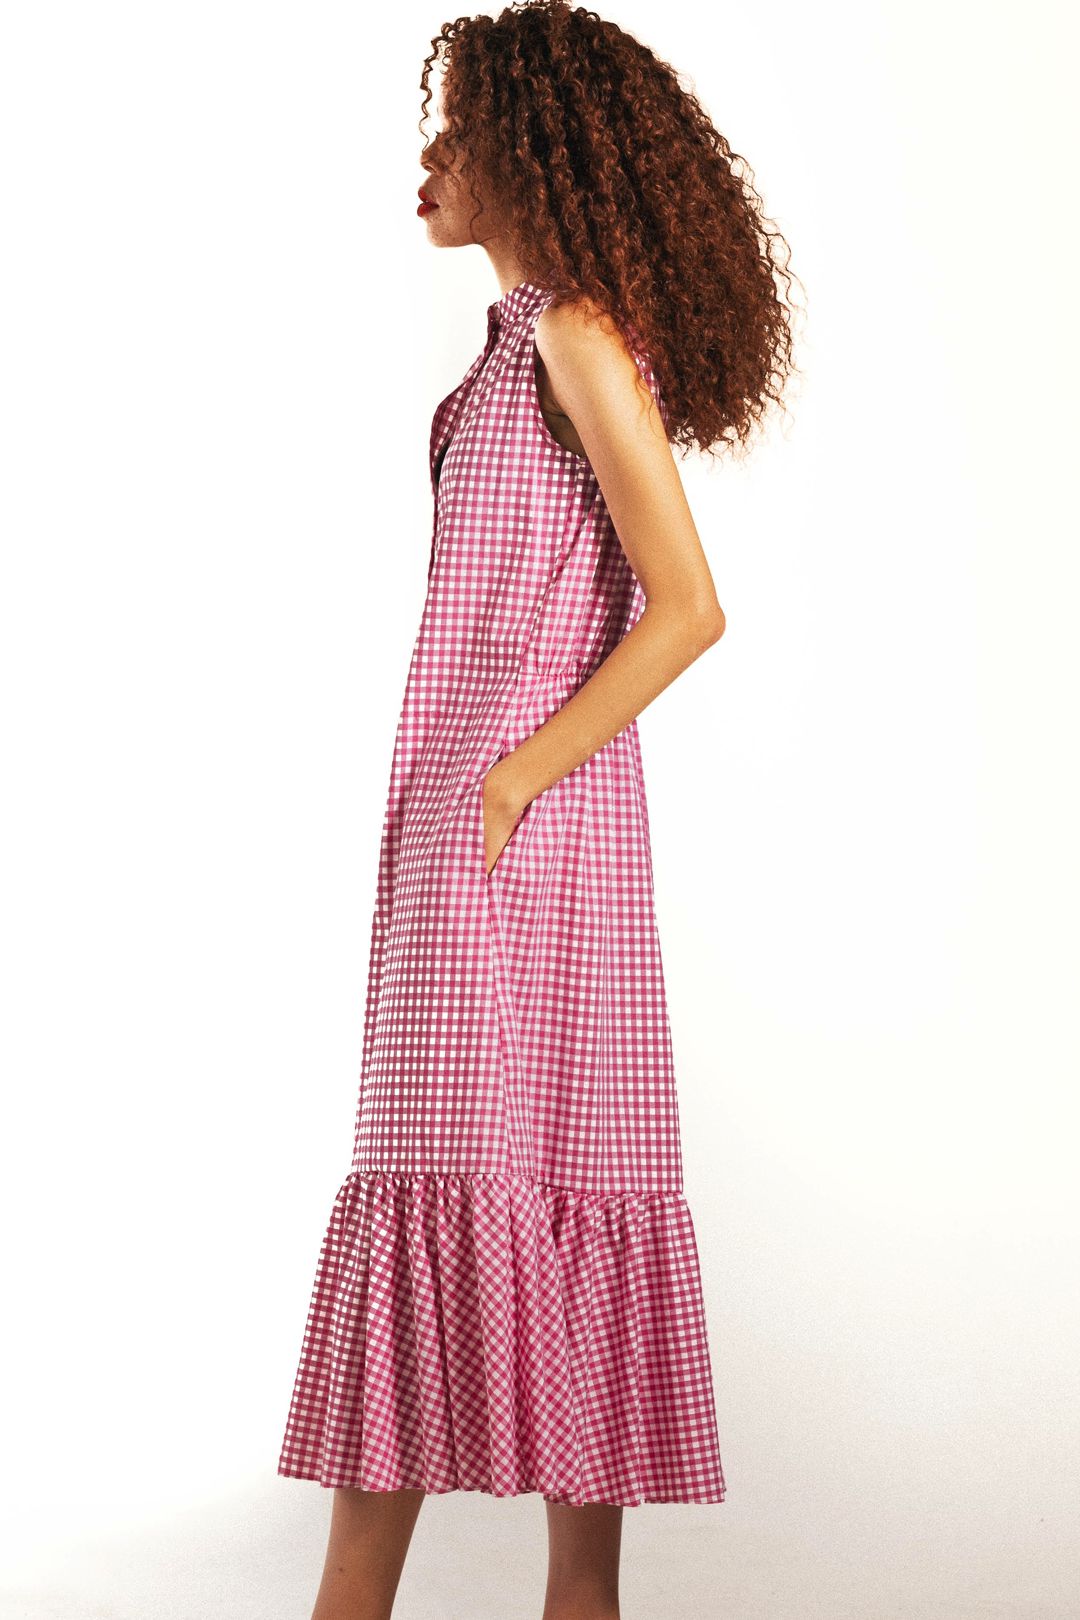 BLAKE Midi Dress - Pink Gingham